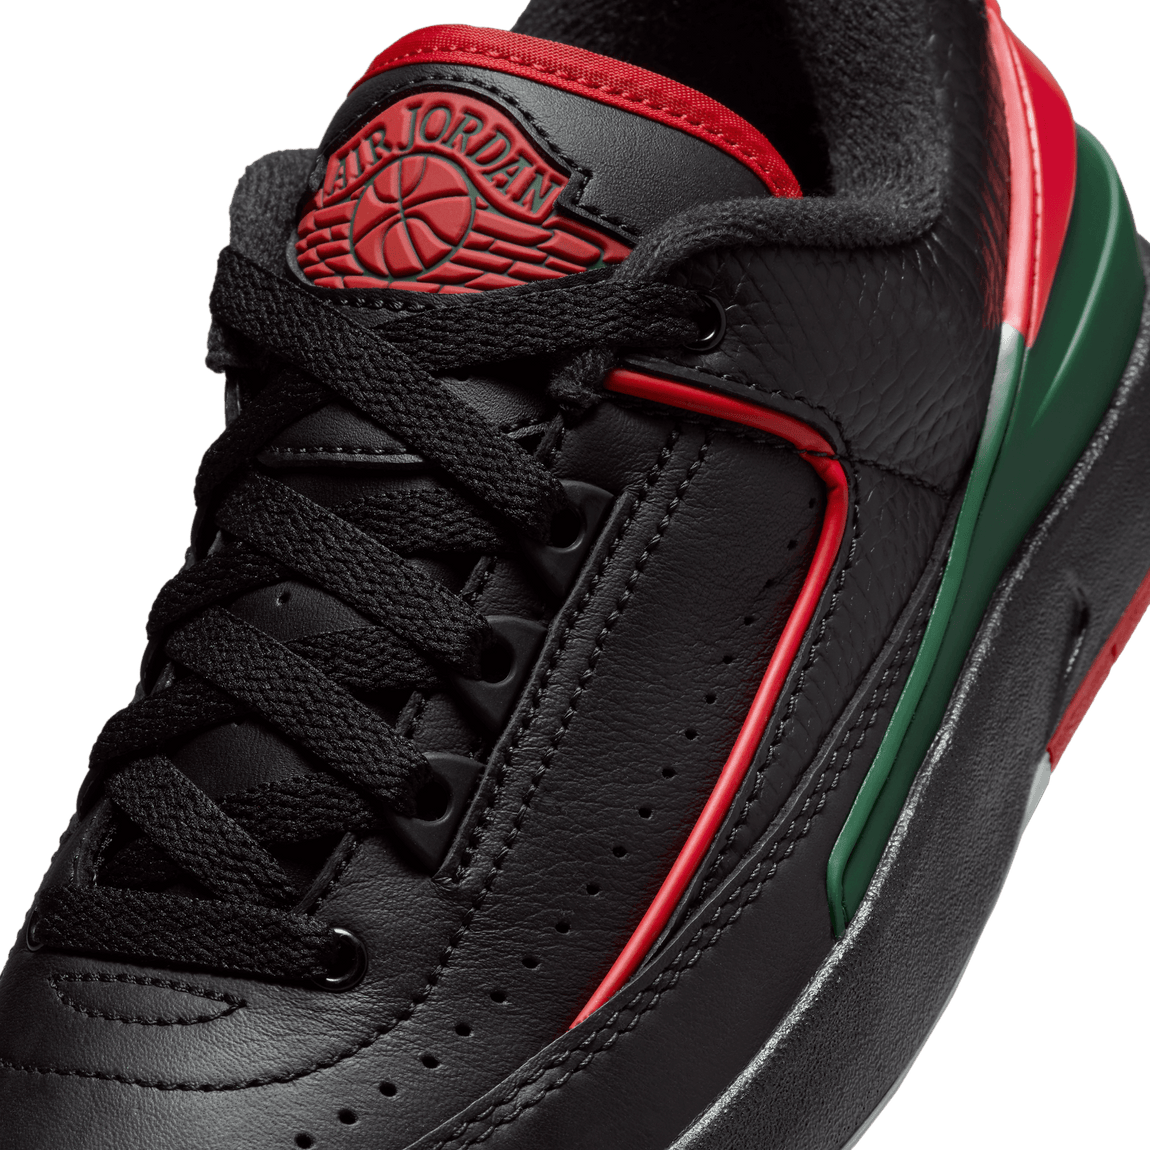 Air Jordan 2 Retro Low GS (Black/Fire Red-Fir-Cement Grey) - Air Jordan 2 Retro Low GS (Black/Fire Red-Fir-Cement Grey) - 